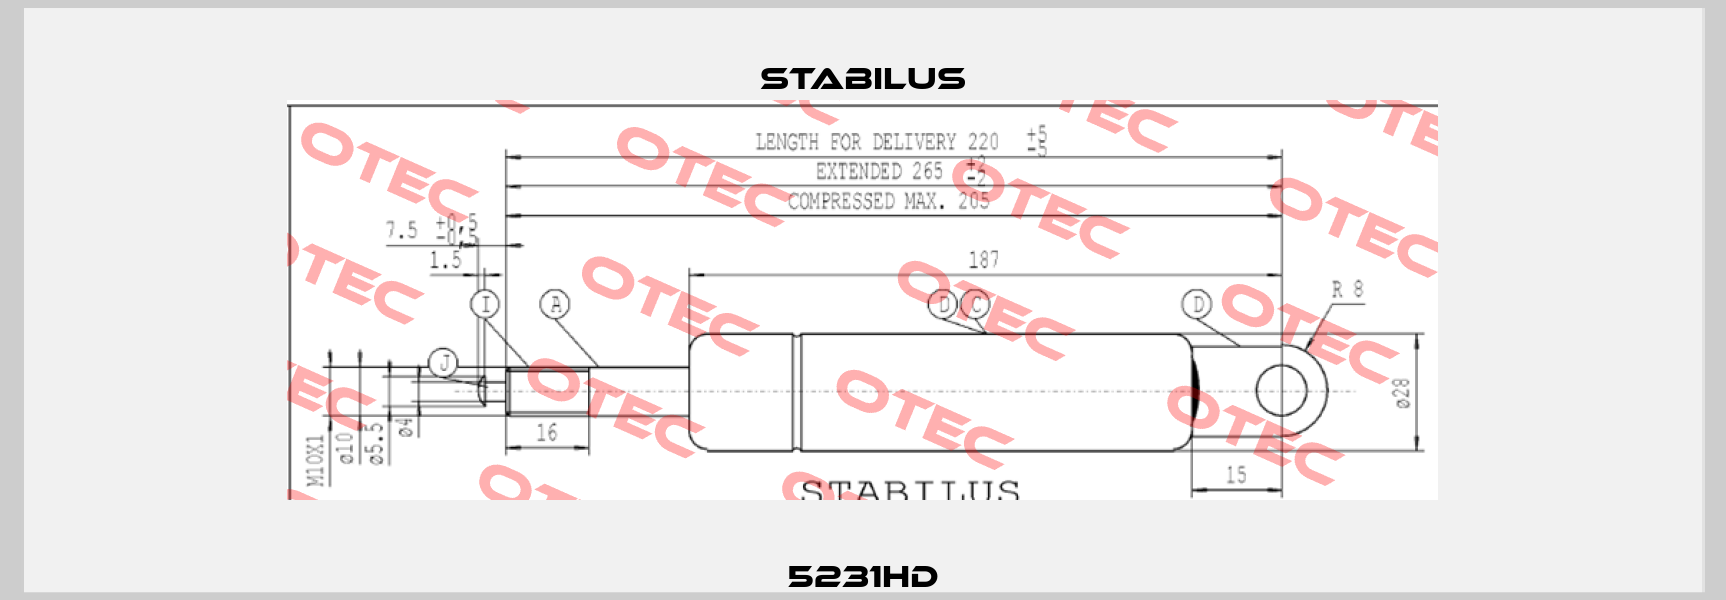 5231HD Stabilus